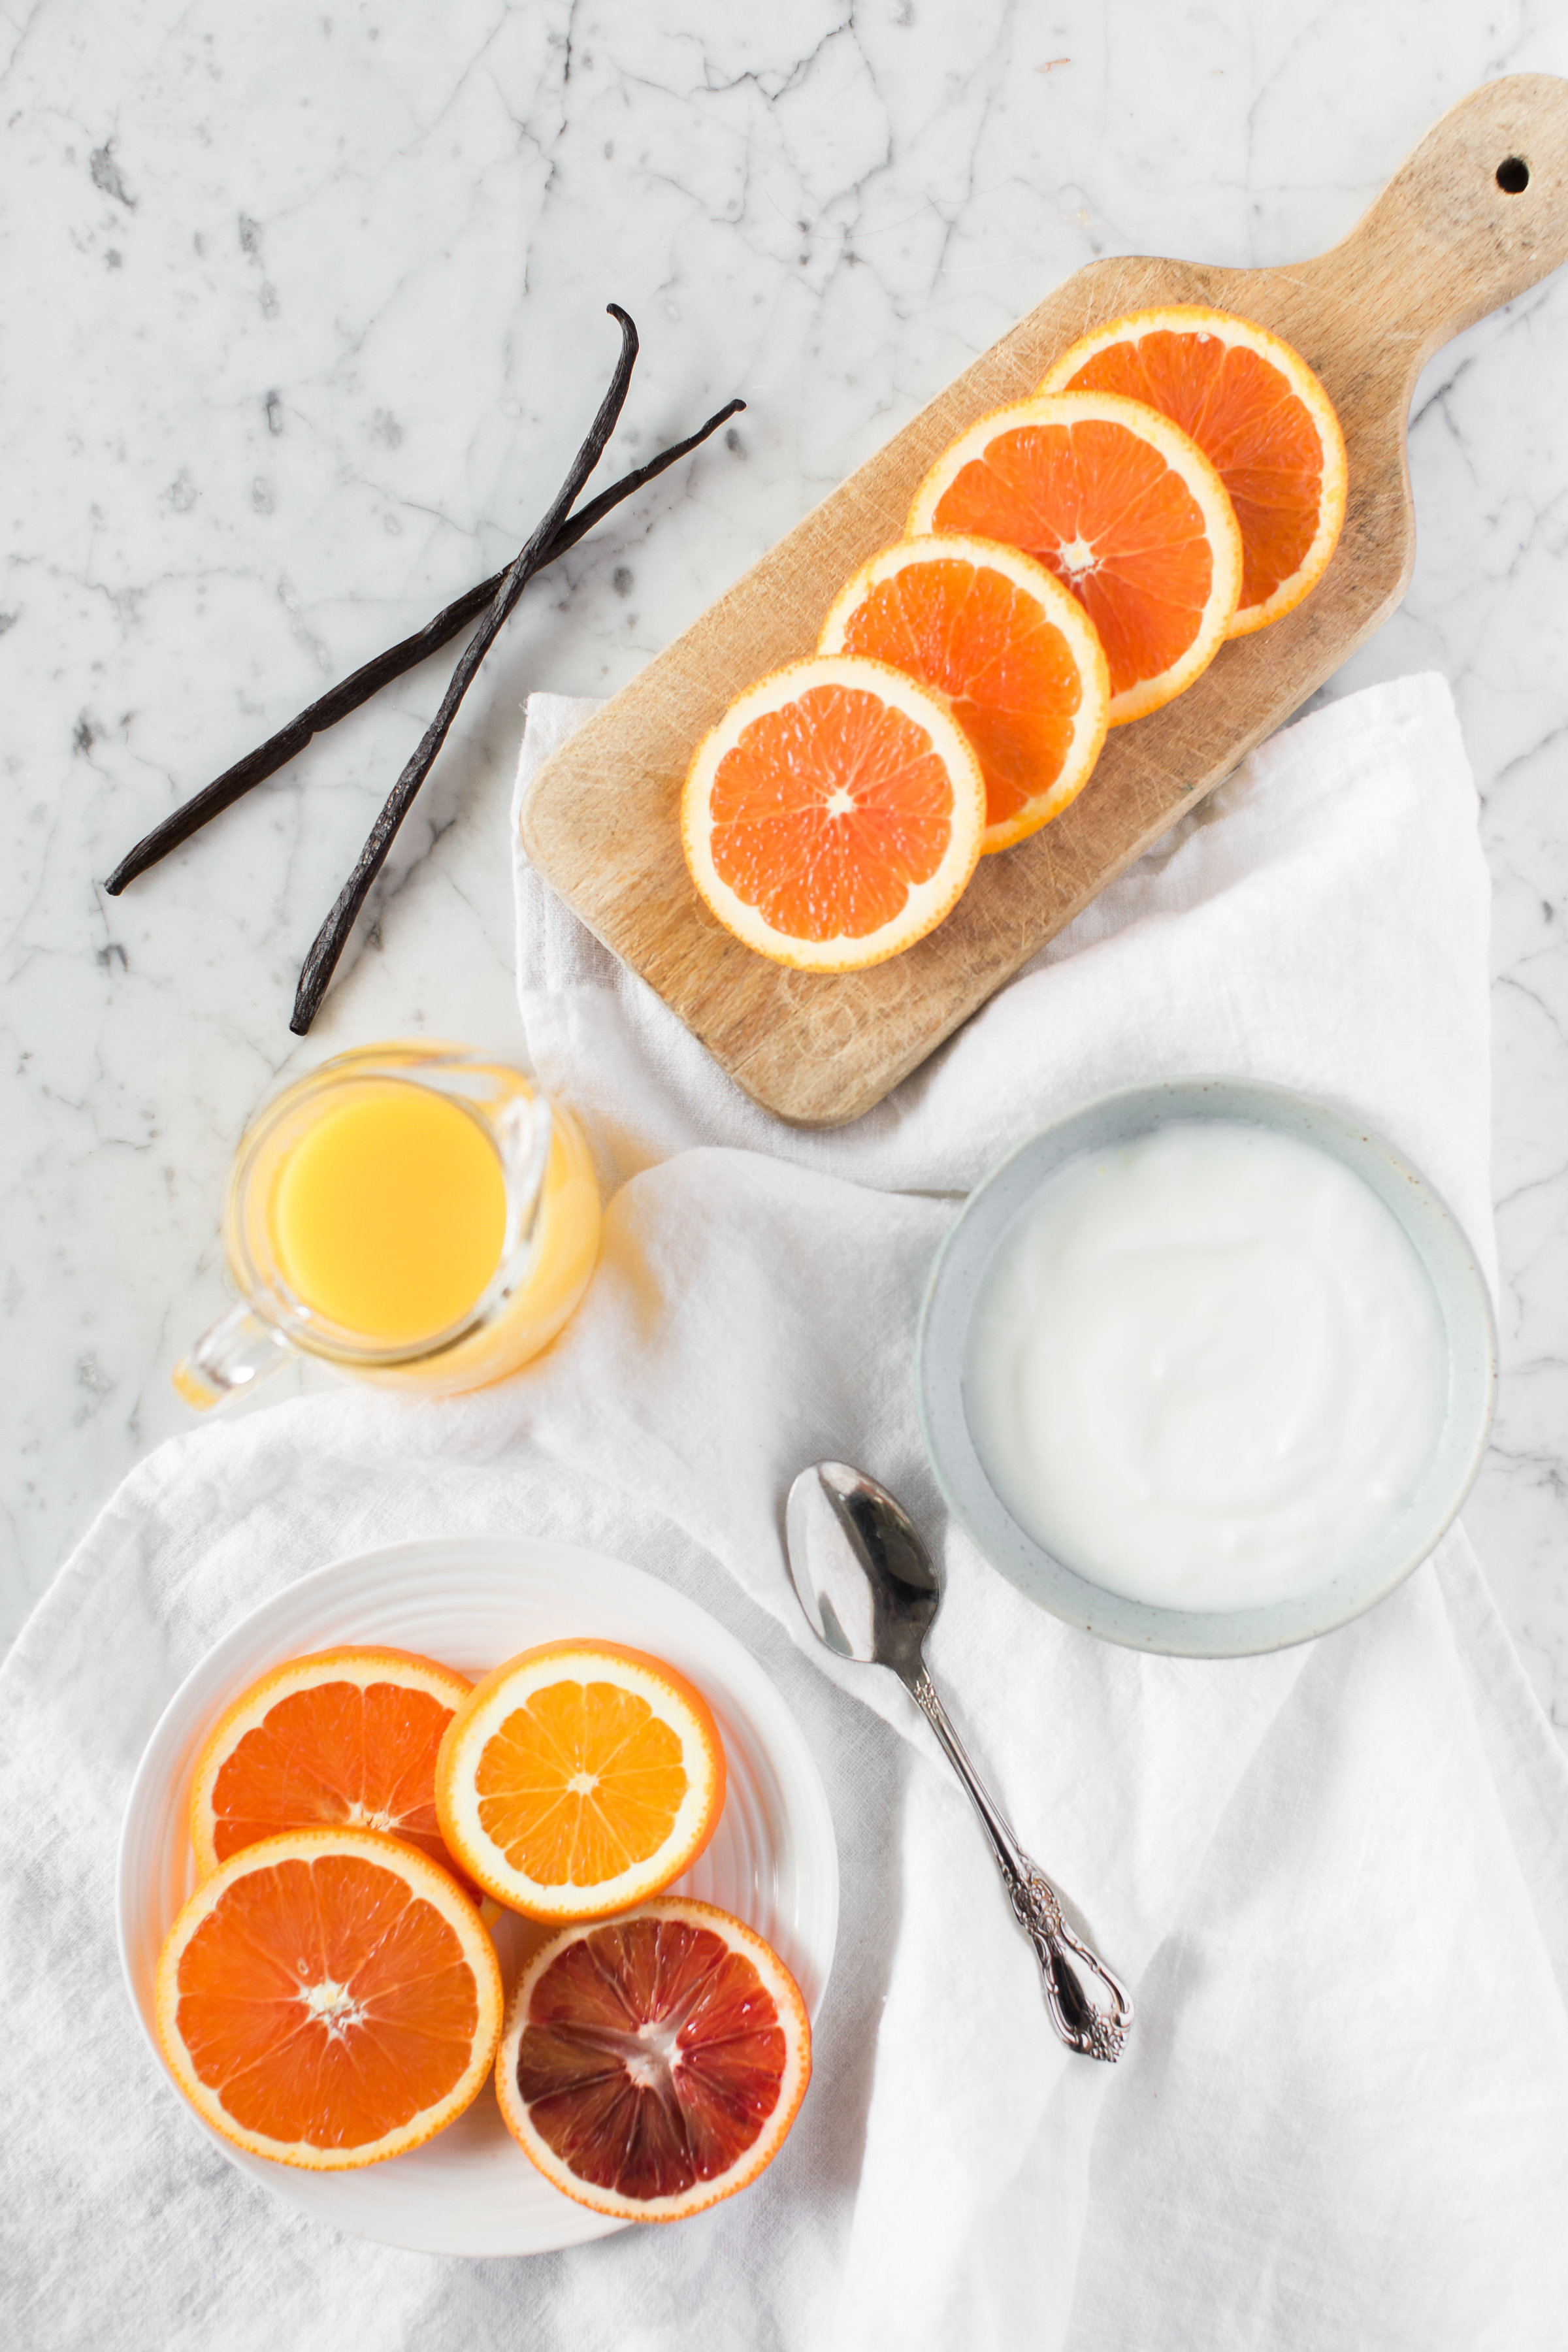 Orange Creamsicle Smoothie Bowl ingredients 